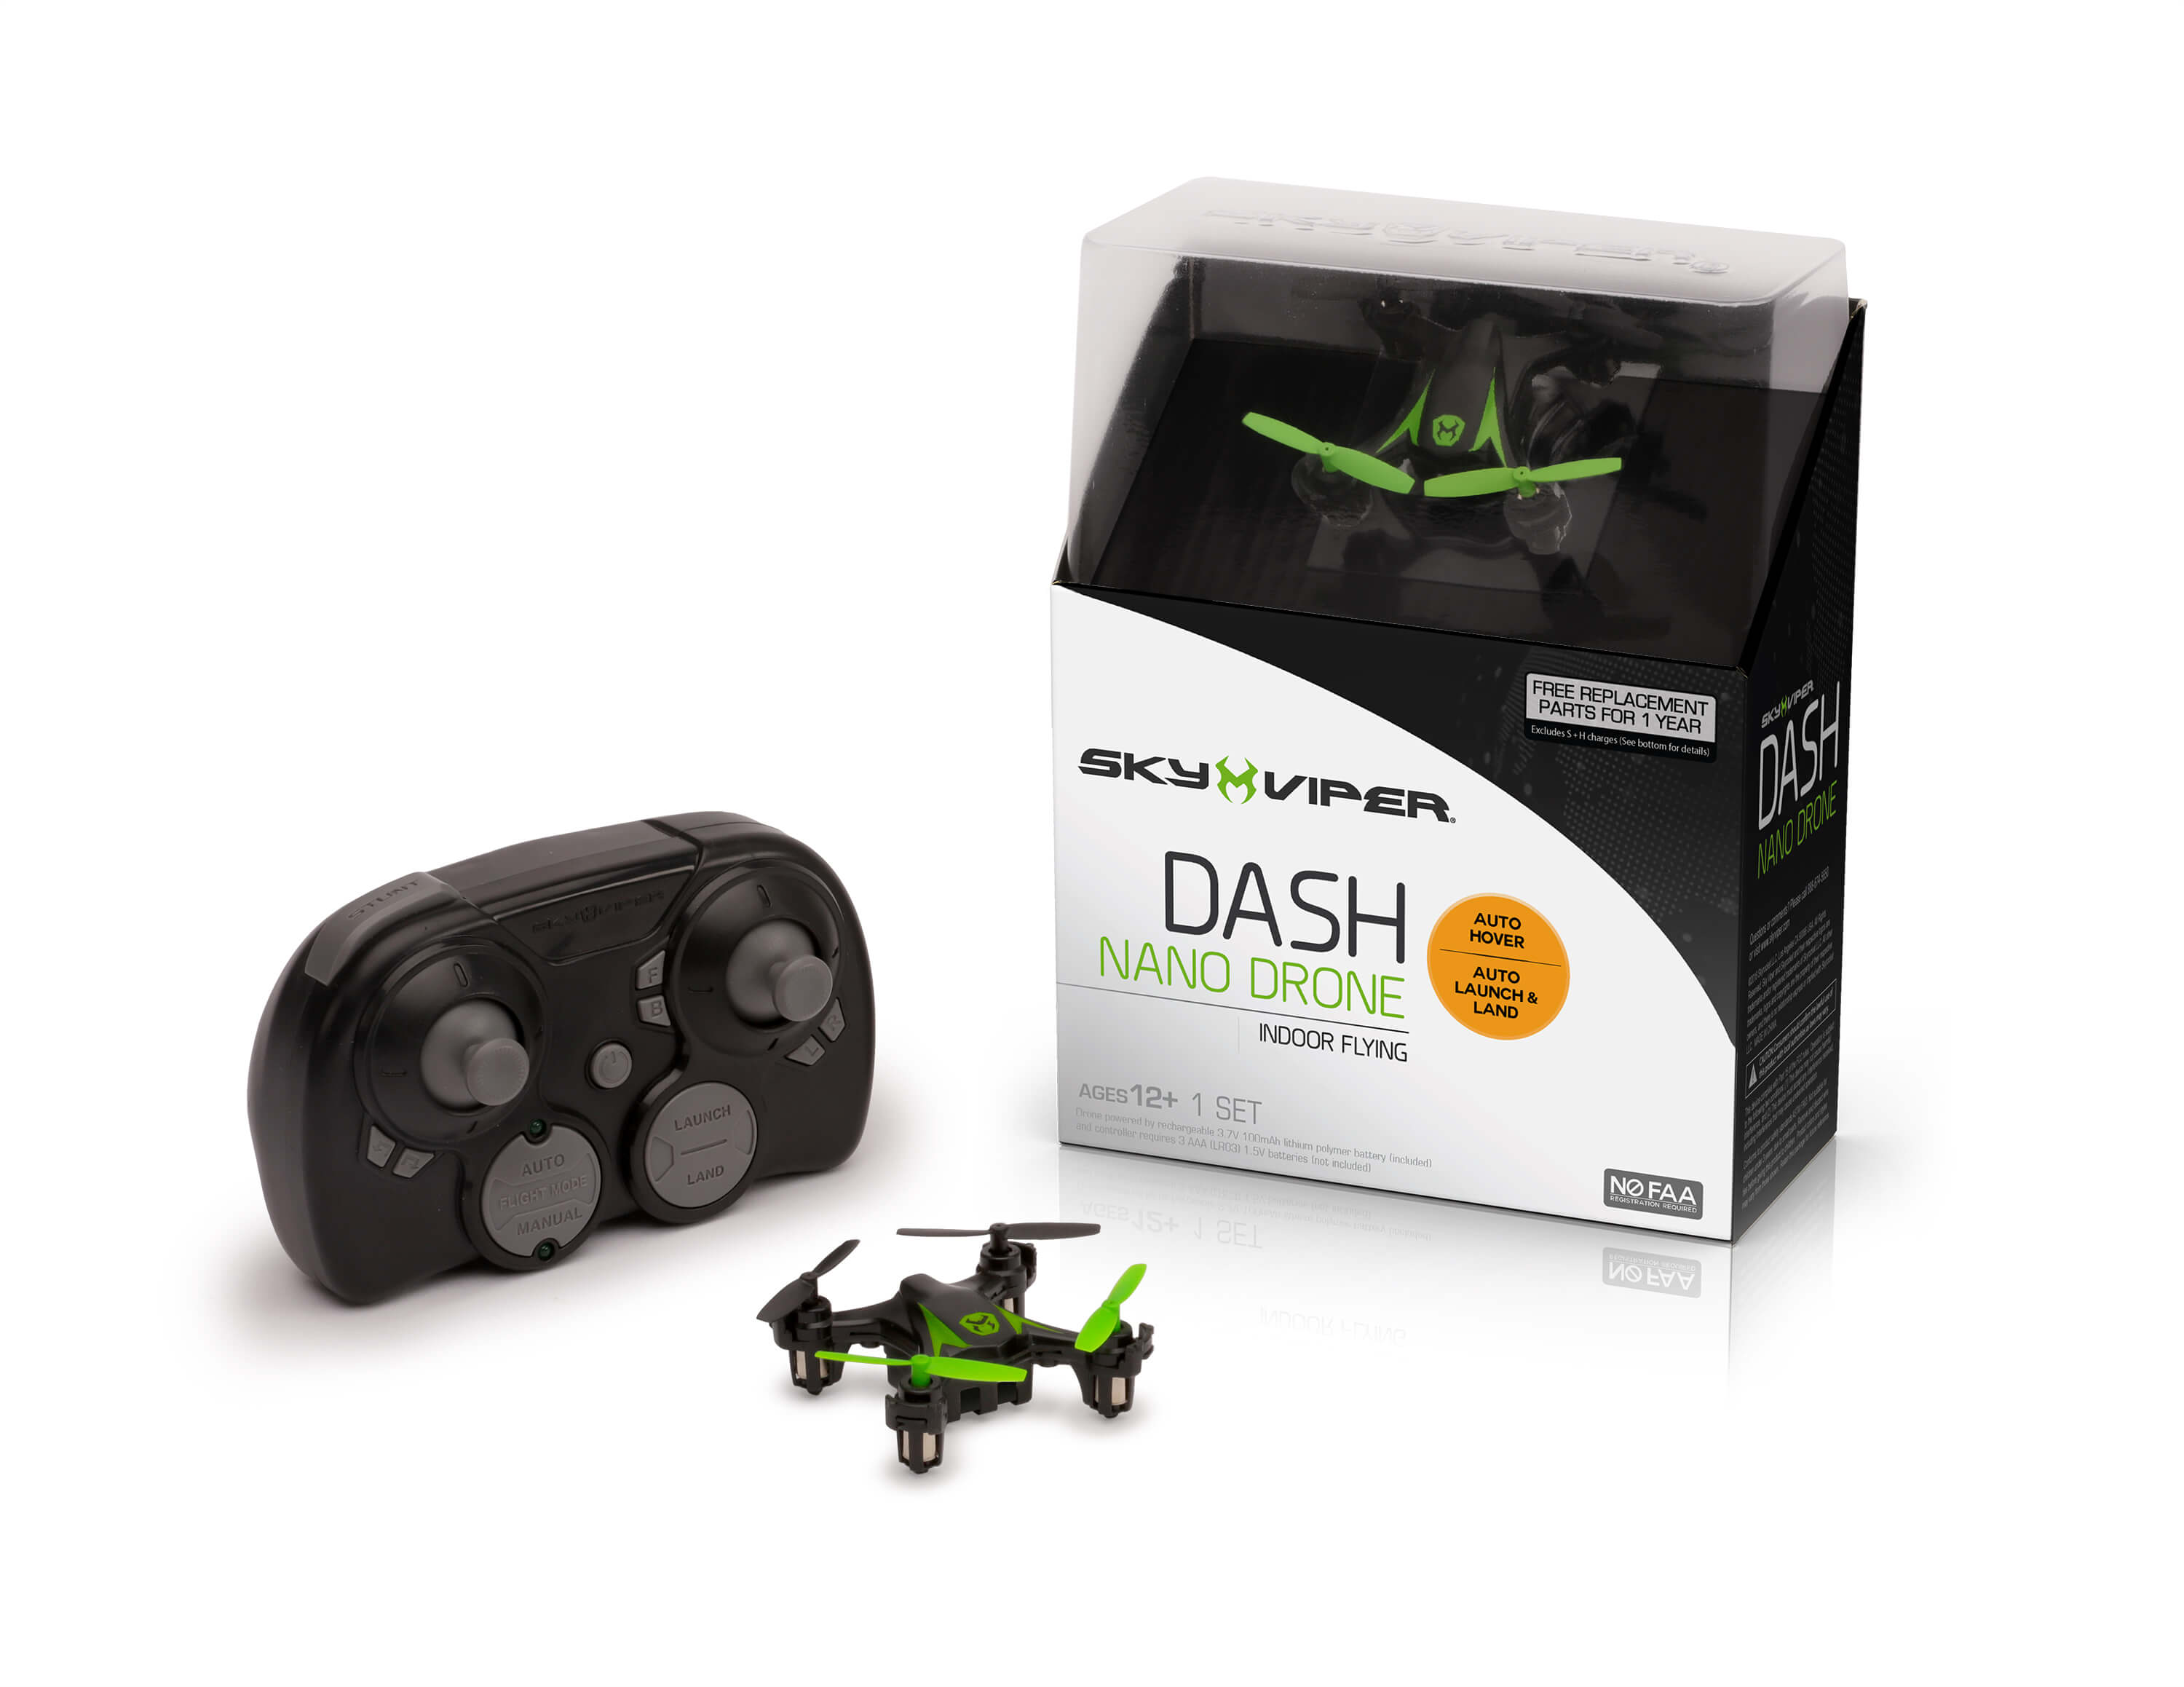 Sky Viper Dash Nano Drone: Under $20